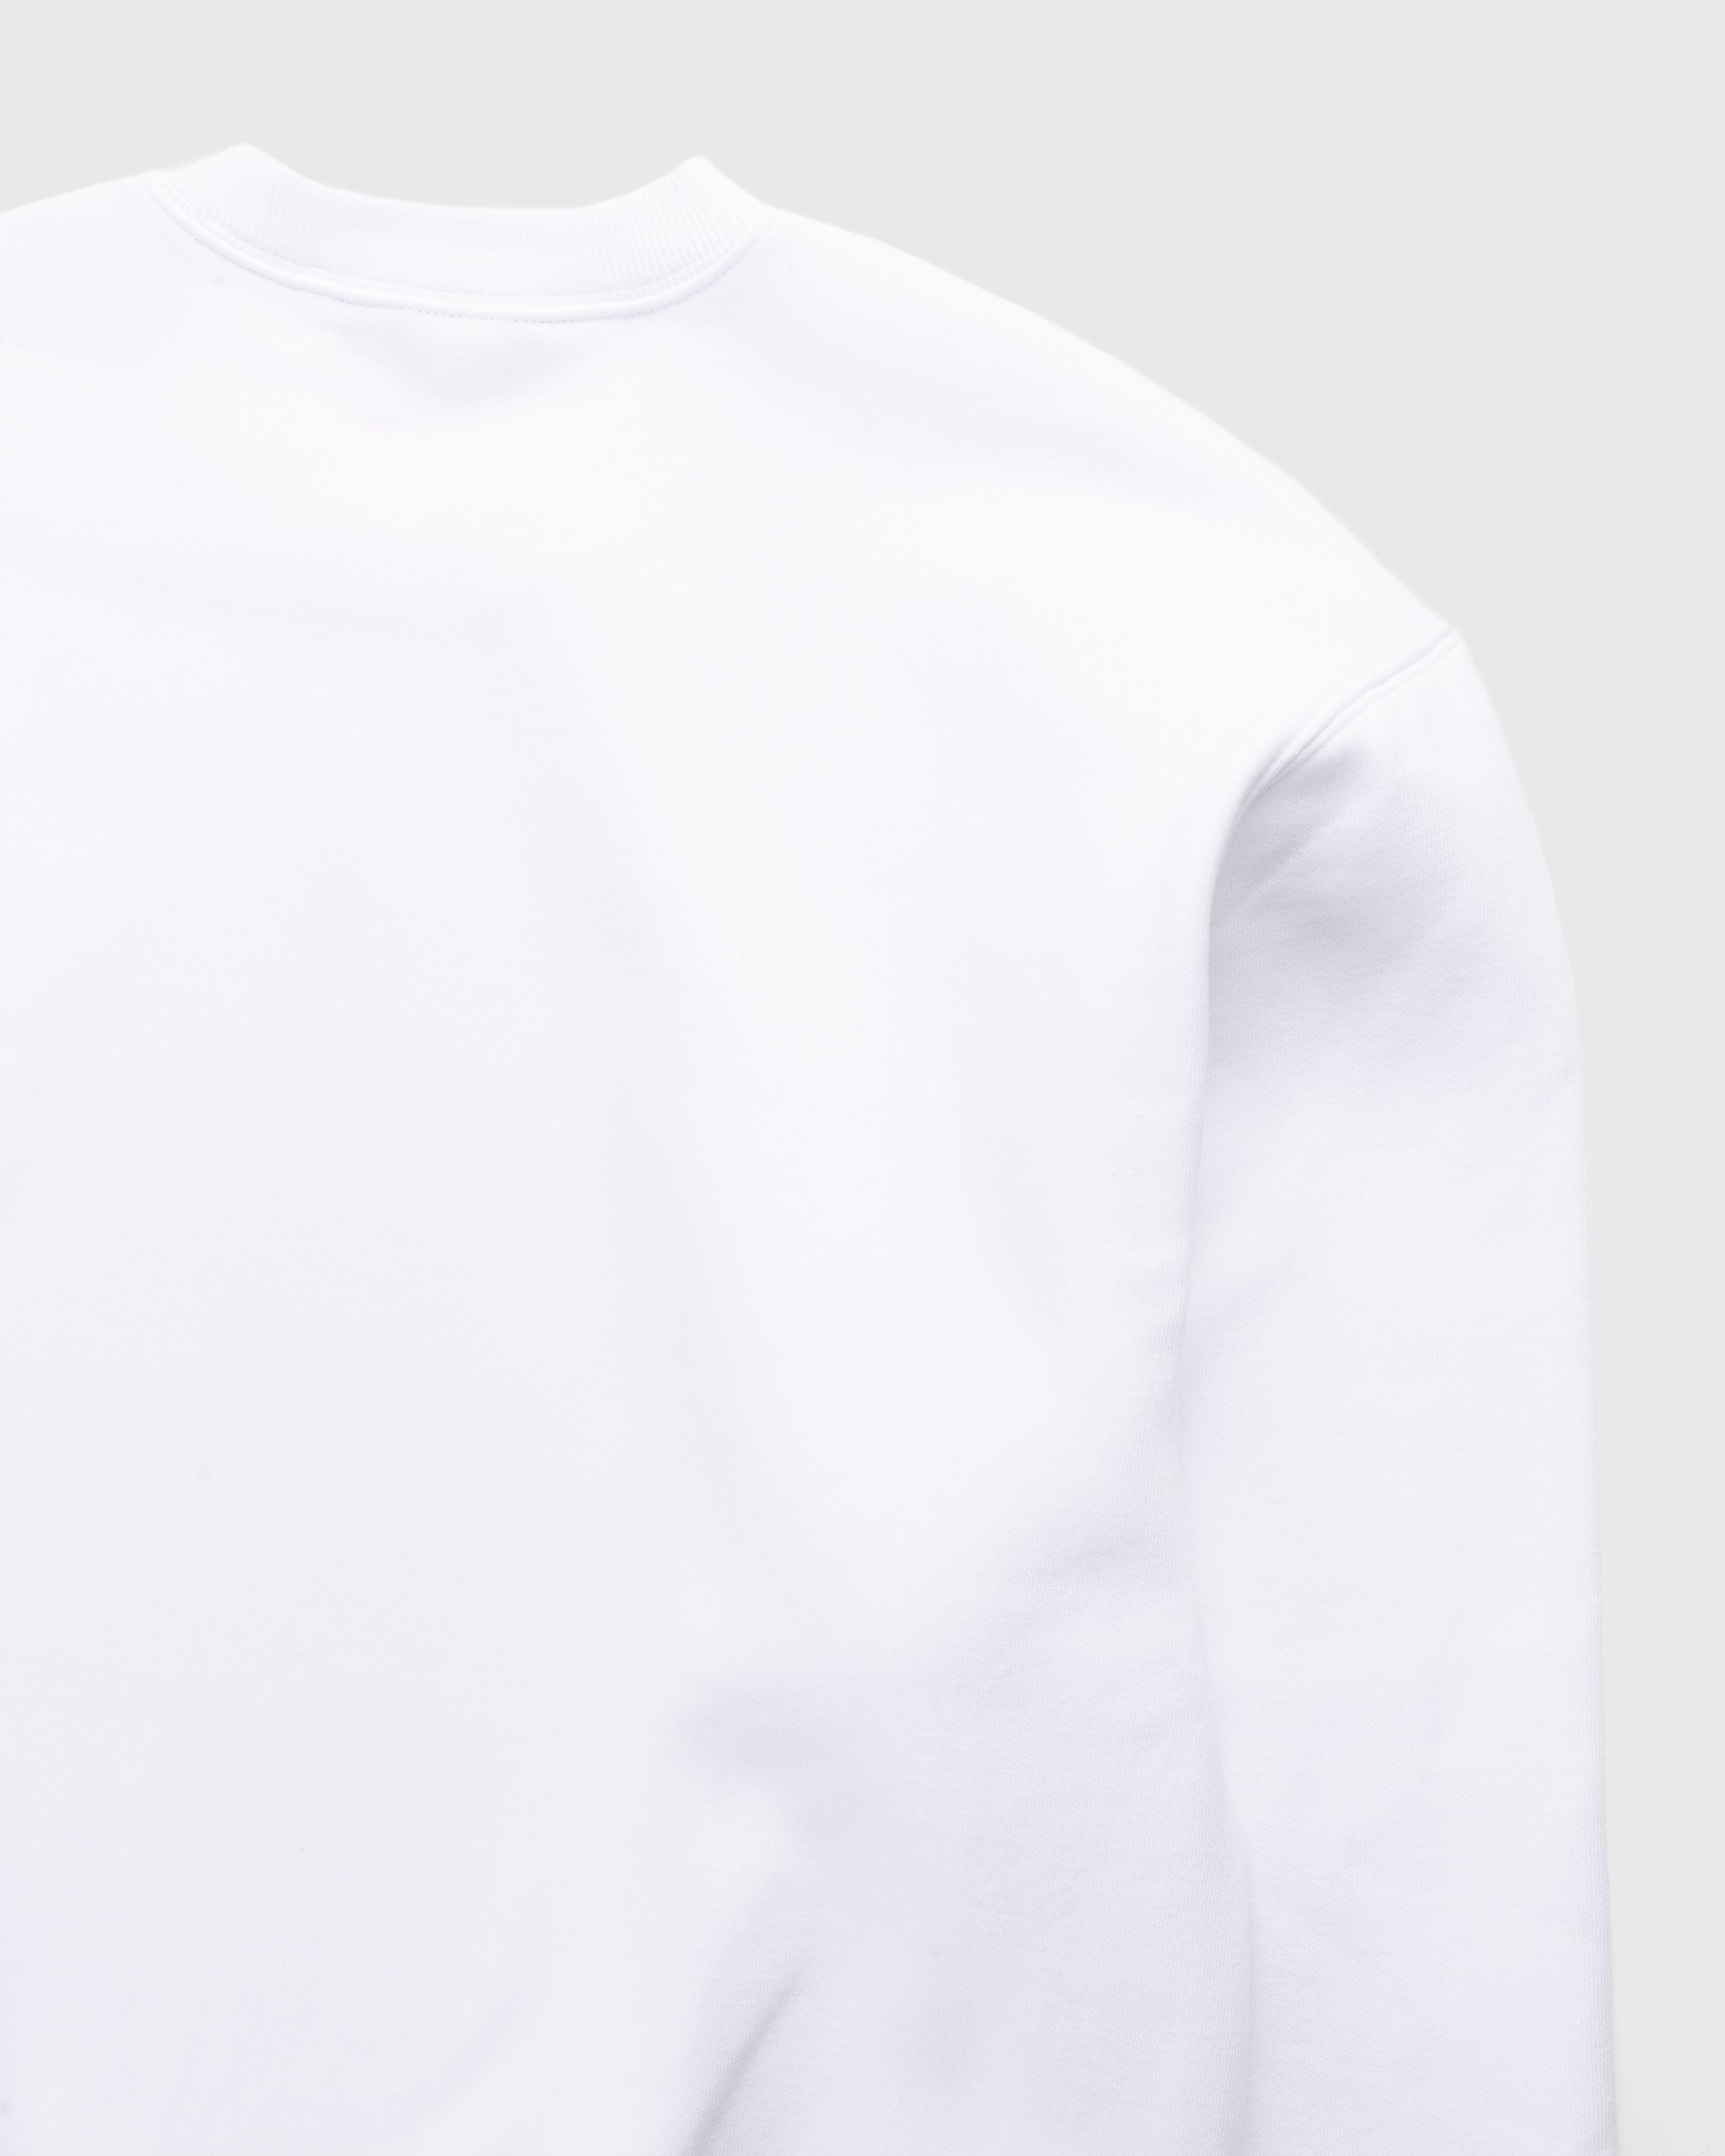 Carhartt WIP - Lucky Painter Sweatshirt White - Clothing - White - Image 4